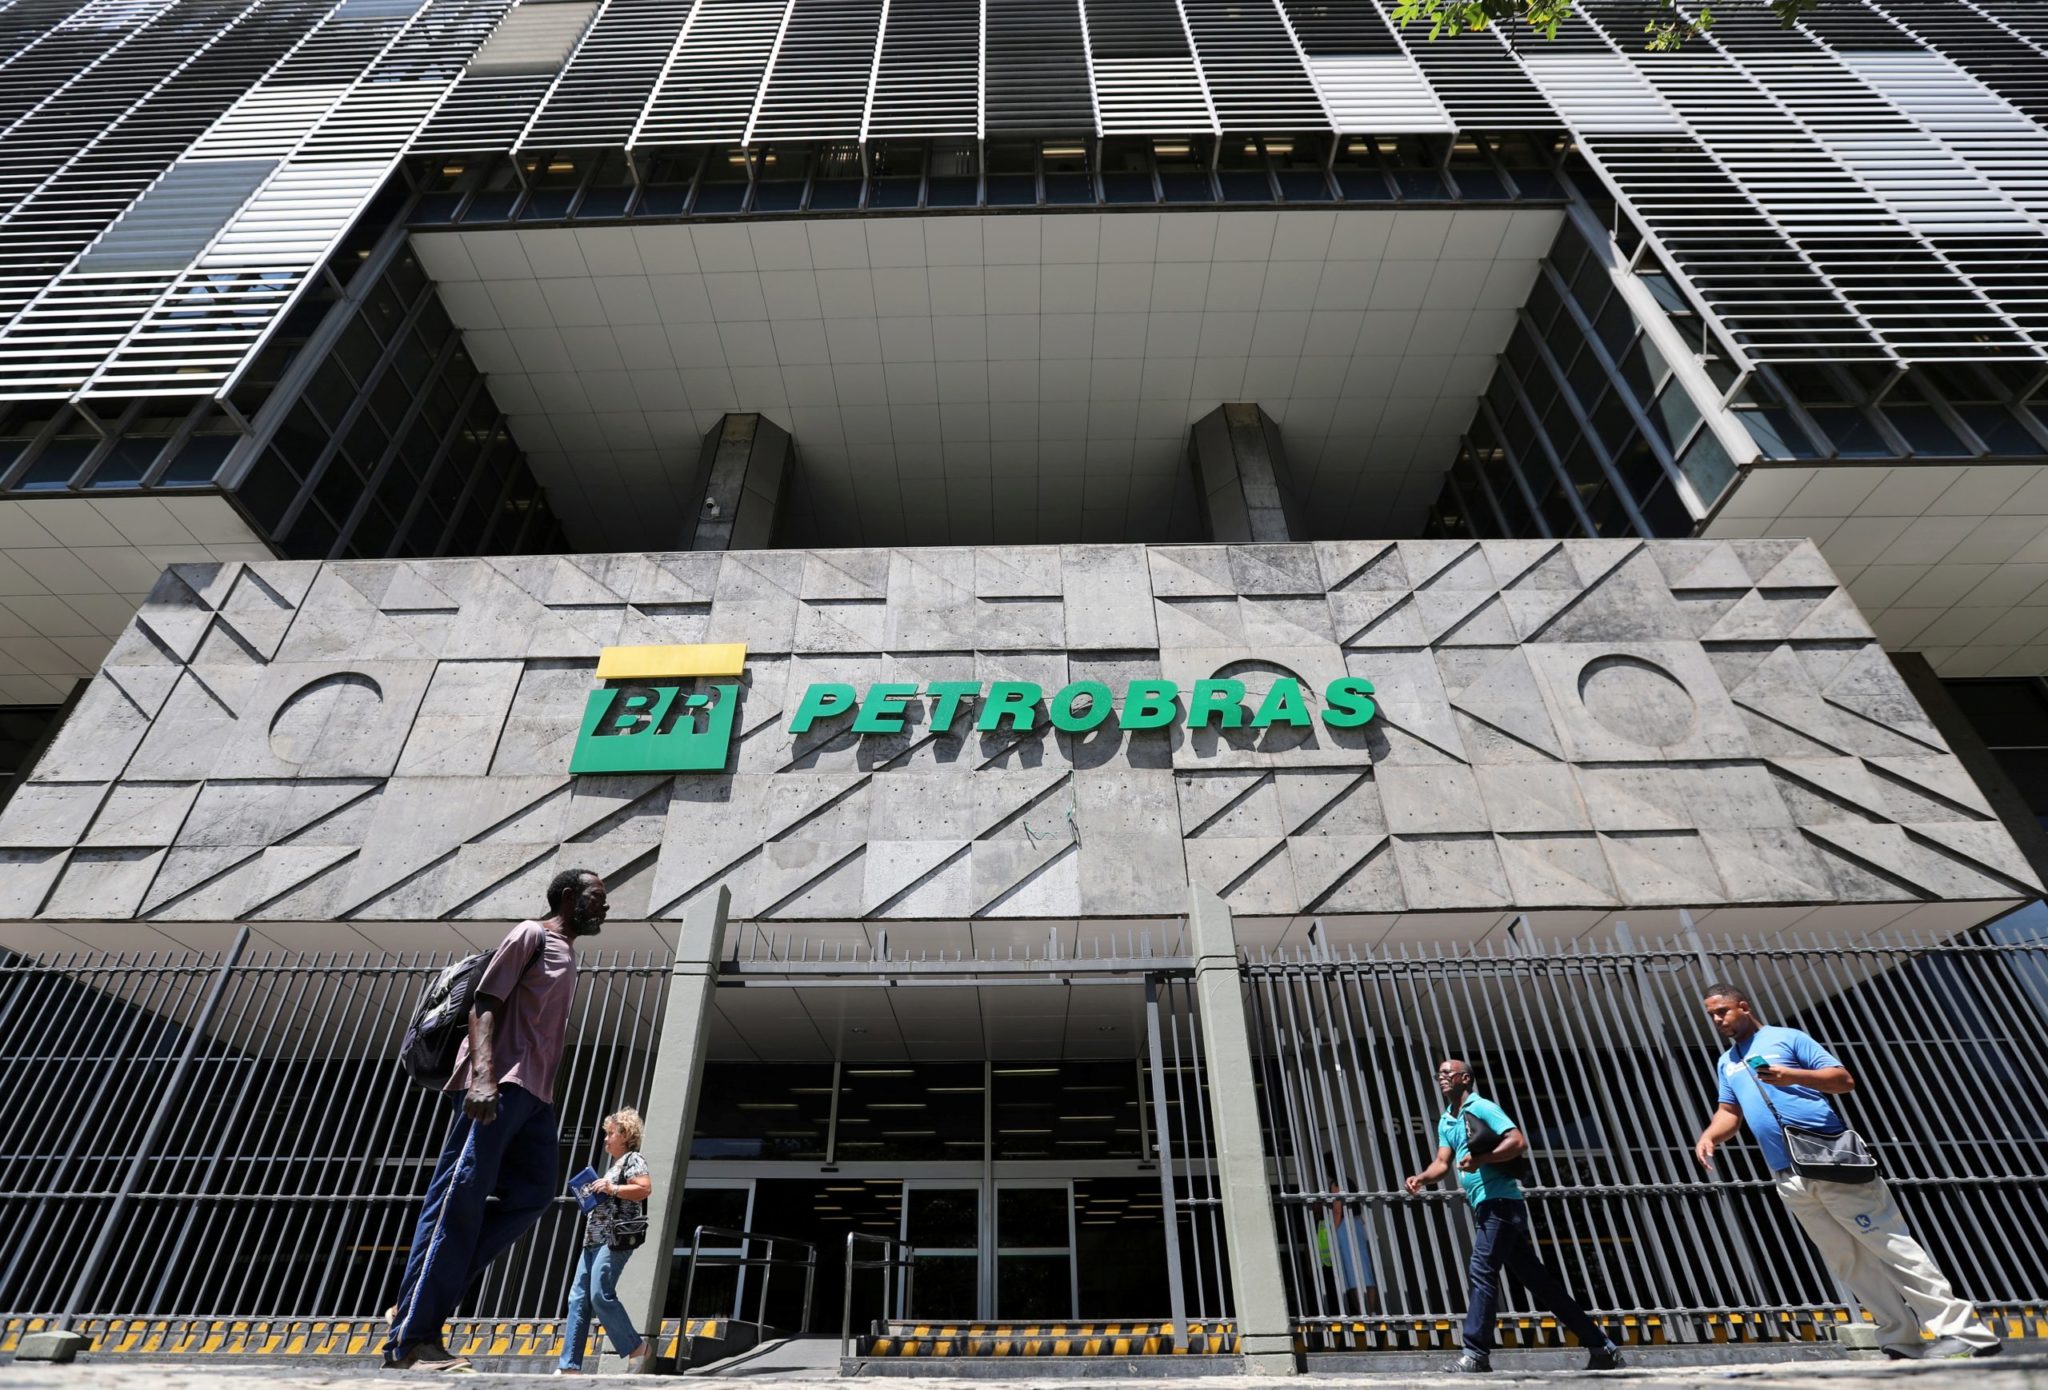 Petrobras no Rio de Janeiro, Brasil.